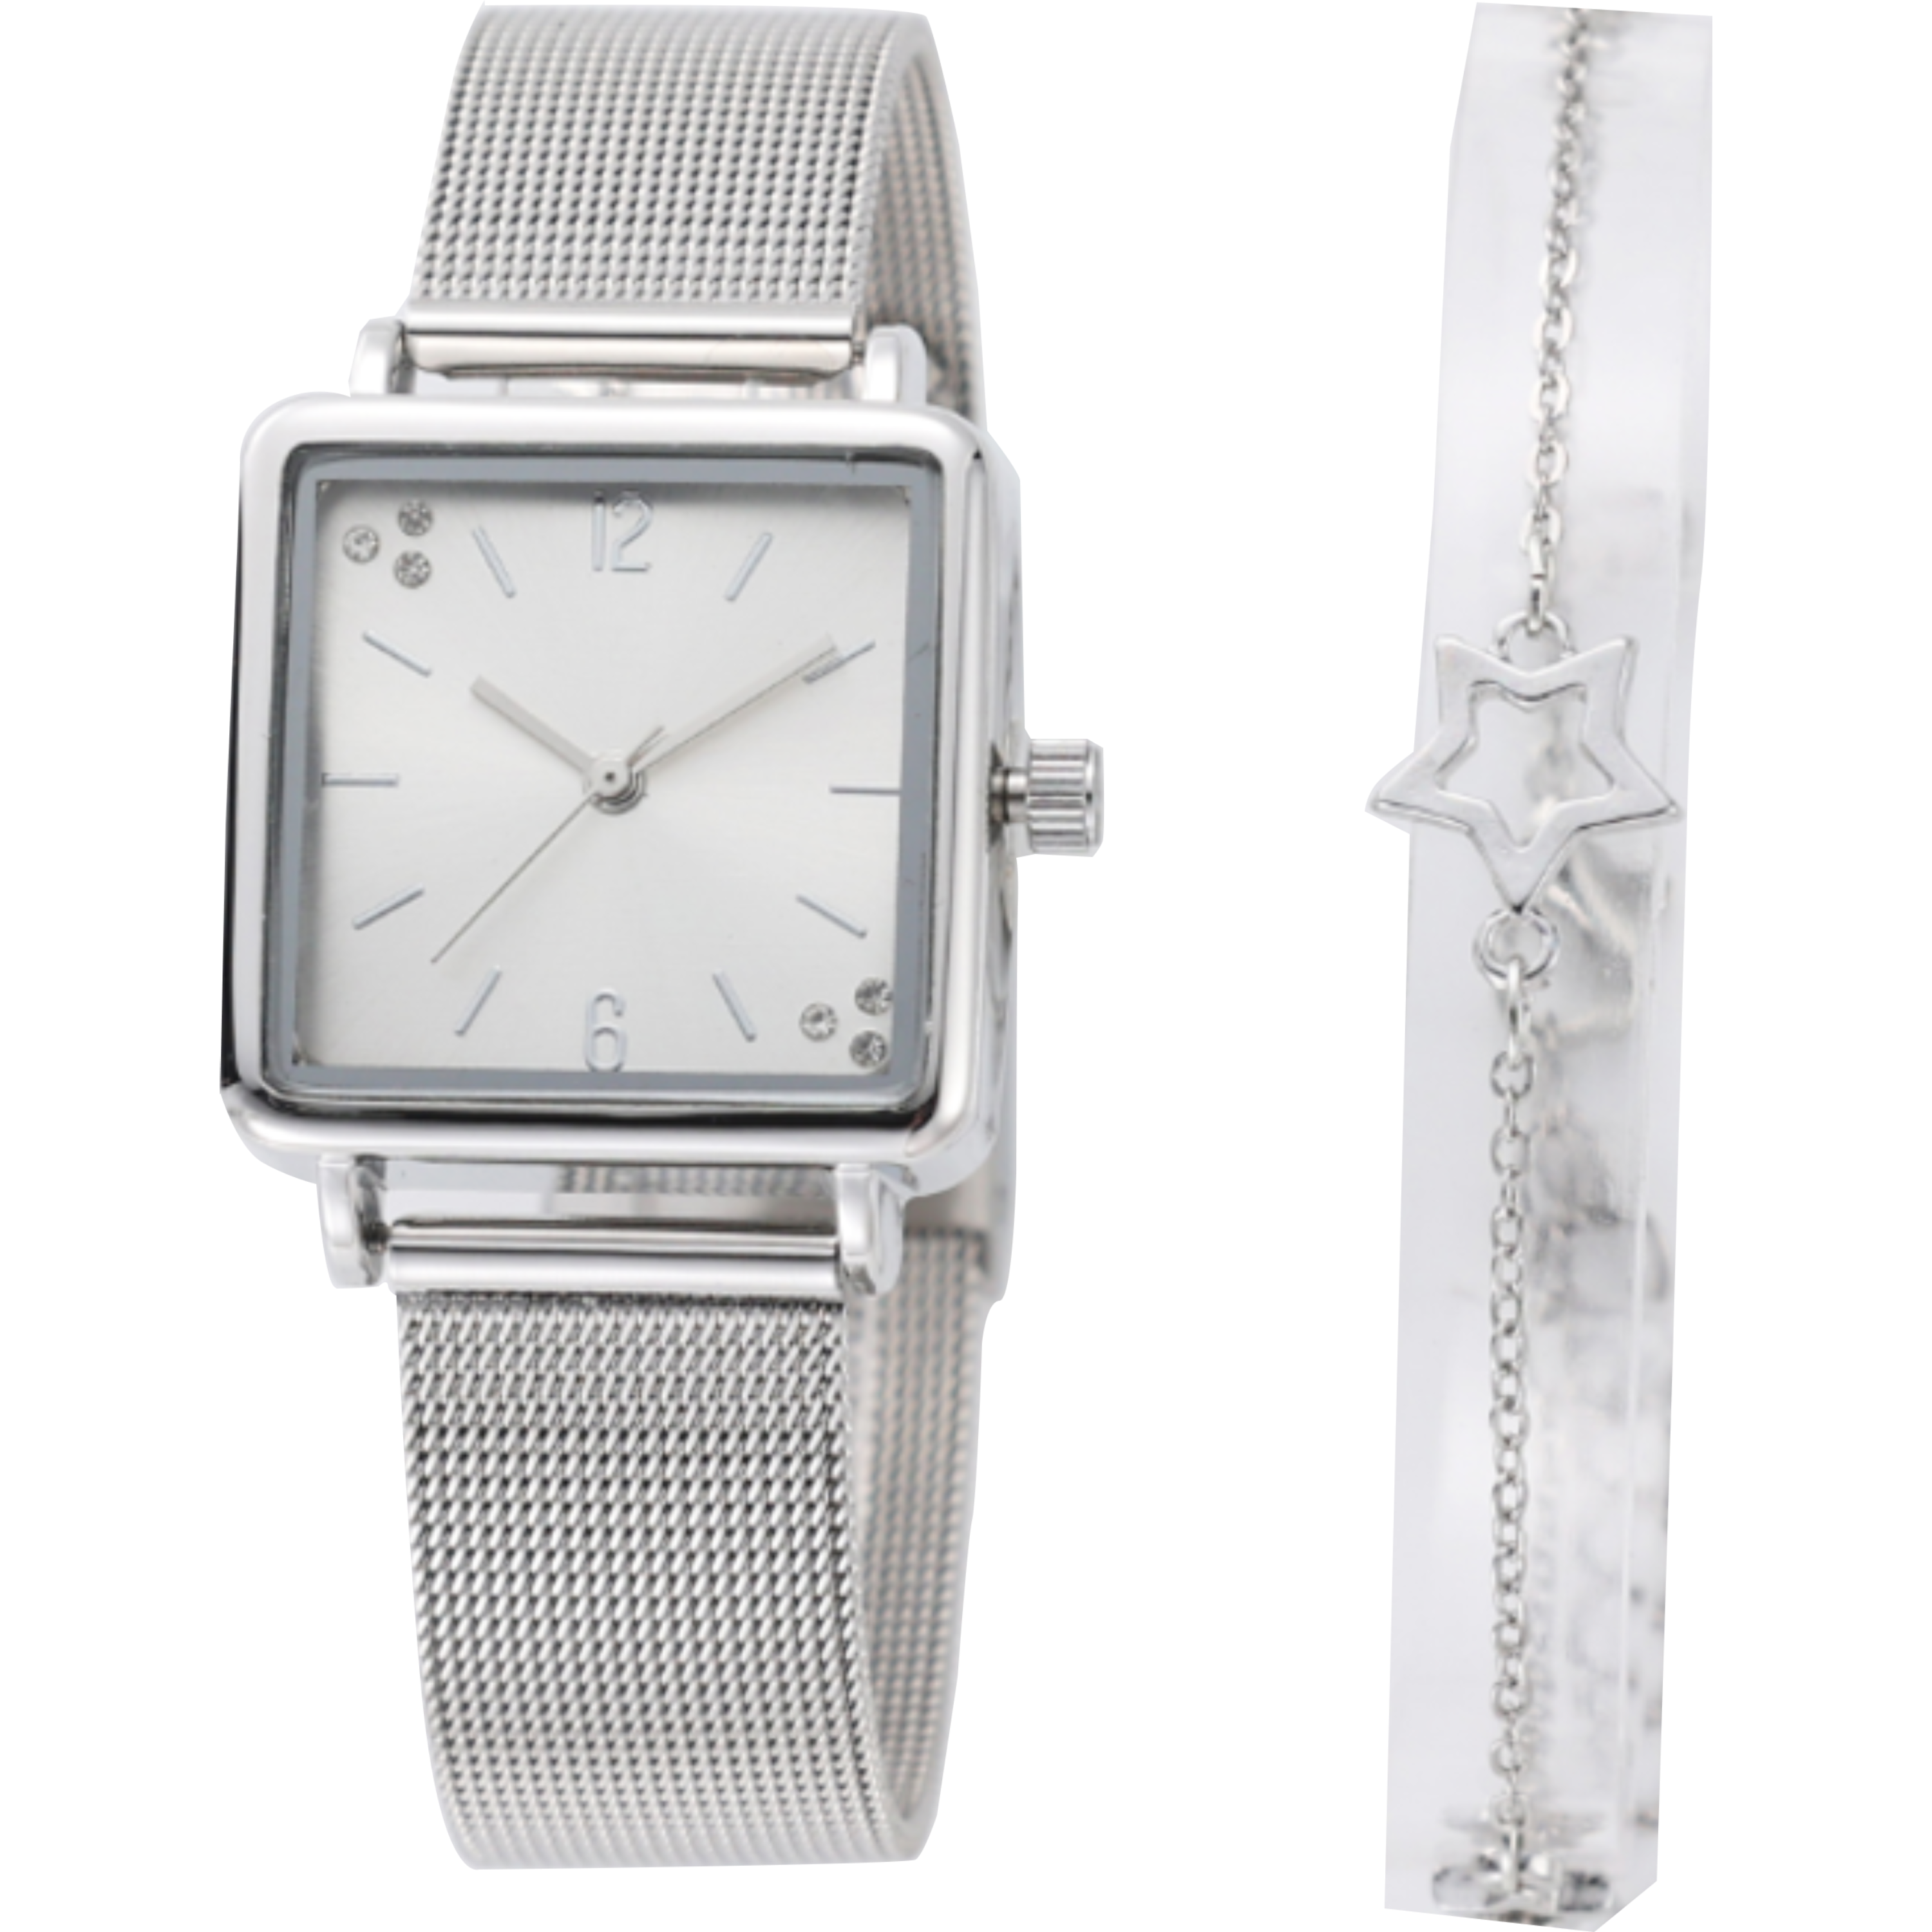 שעון יד לאישה עם צמיד COMTEX SY51 27mm - צבע כסוף אחריות לשנה ע"י היבואן הרשמי